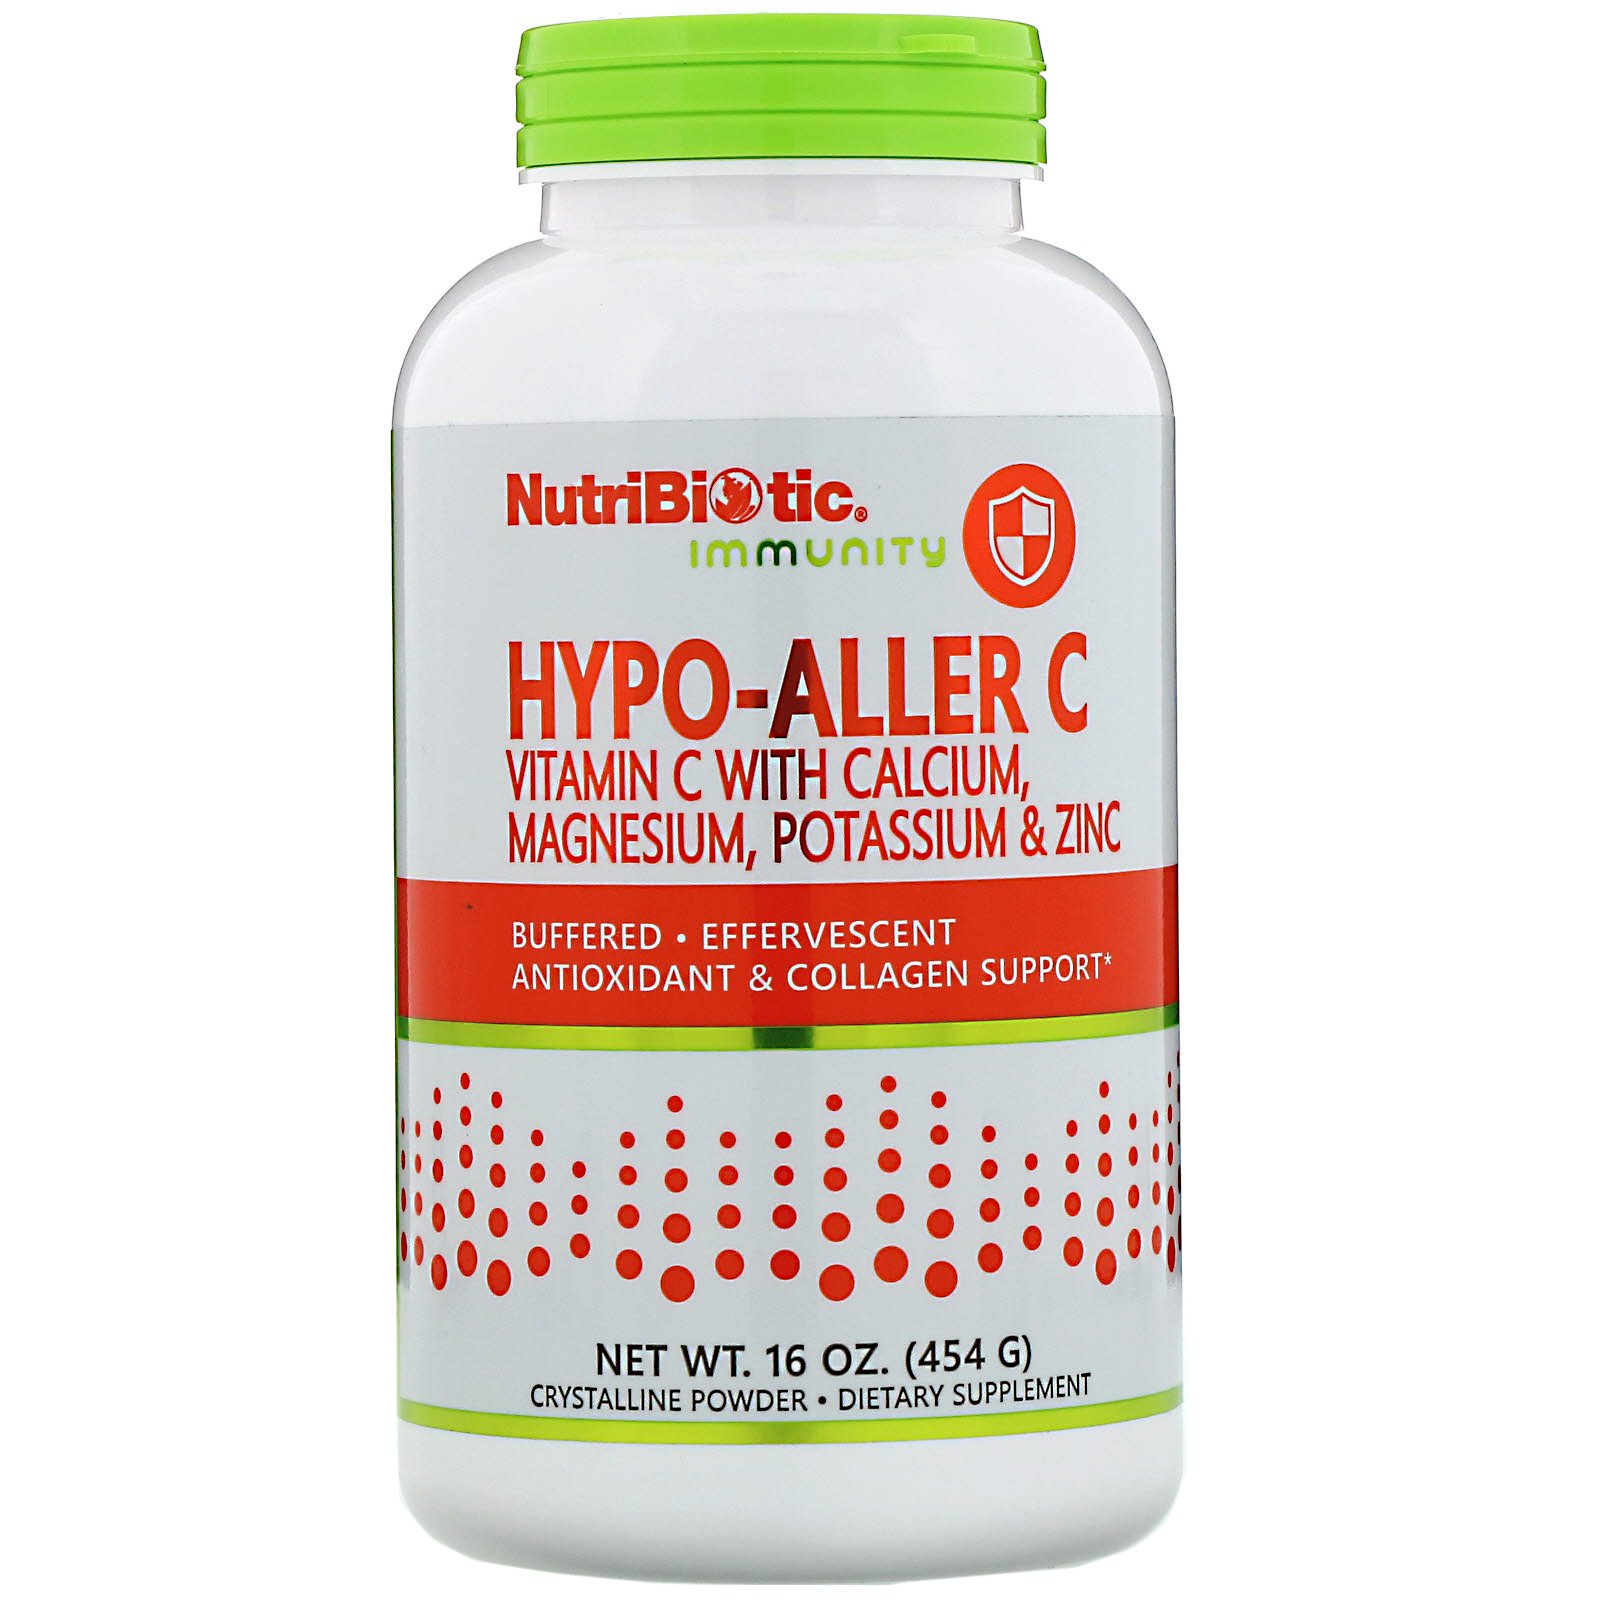 NutriBiotic, Immunity, Hypo-Aller C Vitamin C with Calcium, Magnesium, Potassium &amp; Zinc, 16 oz (454 g)